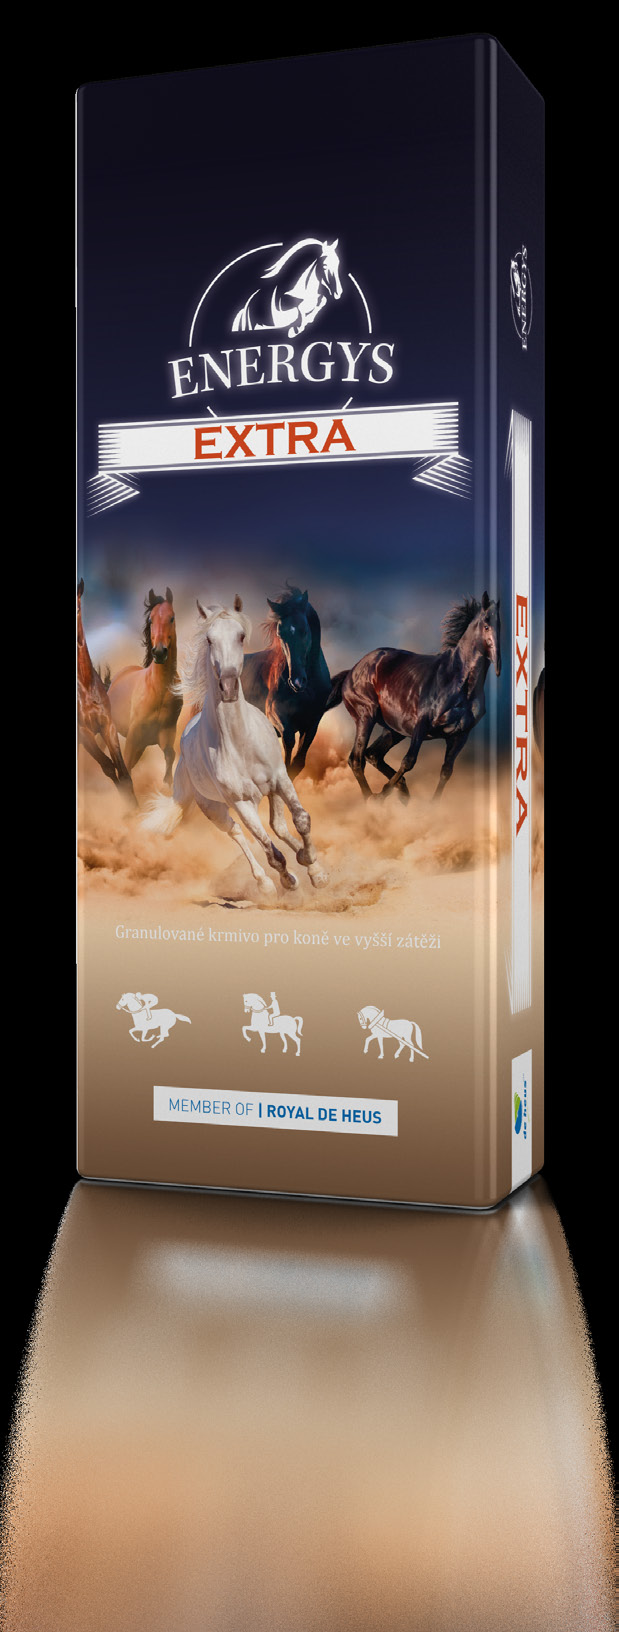 XTR Granulované krmivo pro koně ve vyšší zátěži nergetické krmivo s vyšším obsahem kukuřice vhodné pro koně ve vysoké sportovní a pracovní zátěži.